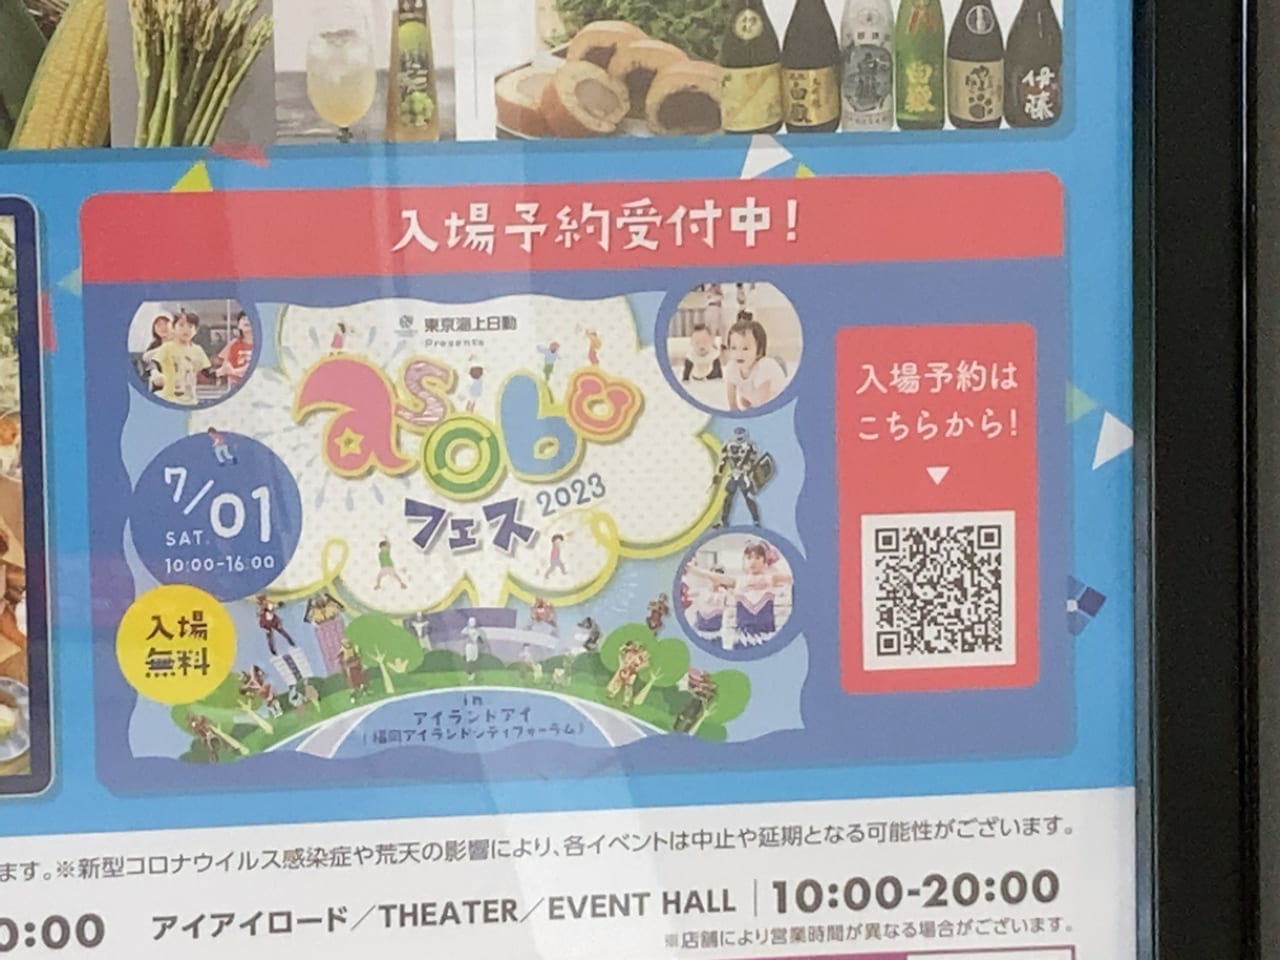 福岡アイランドシティフォーラムで7月1日(土)に、東京海上日動協賛の無料イベント「asobufes2023」が開催されるようです。